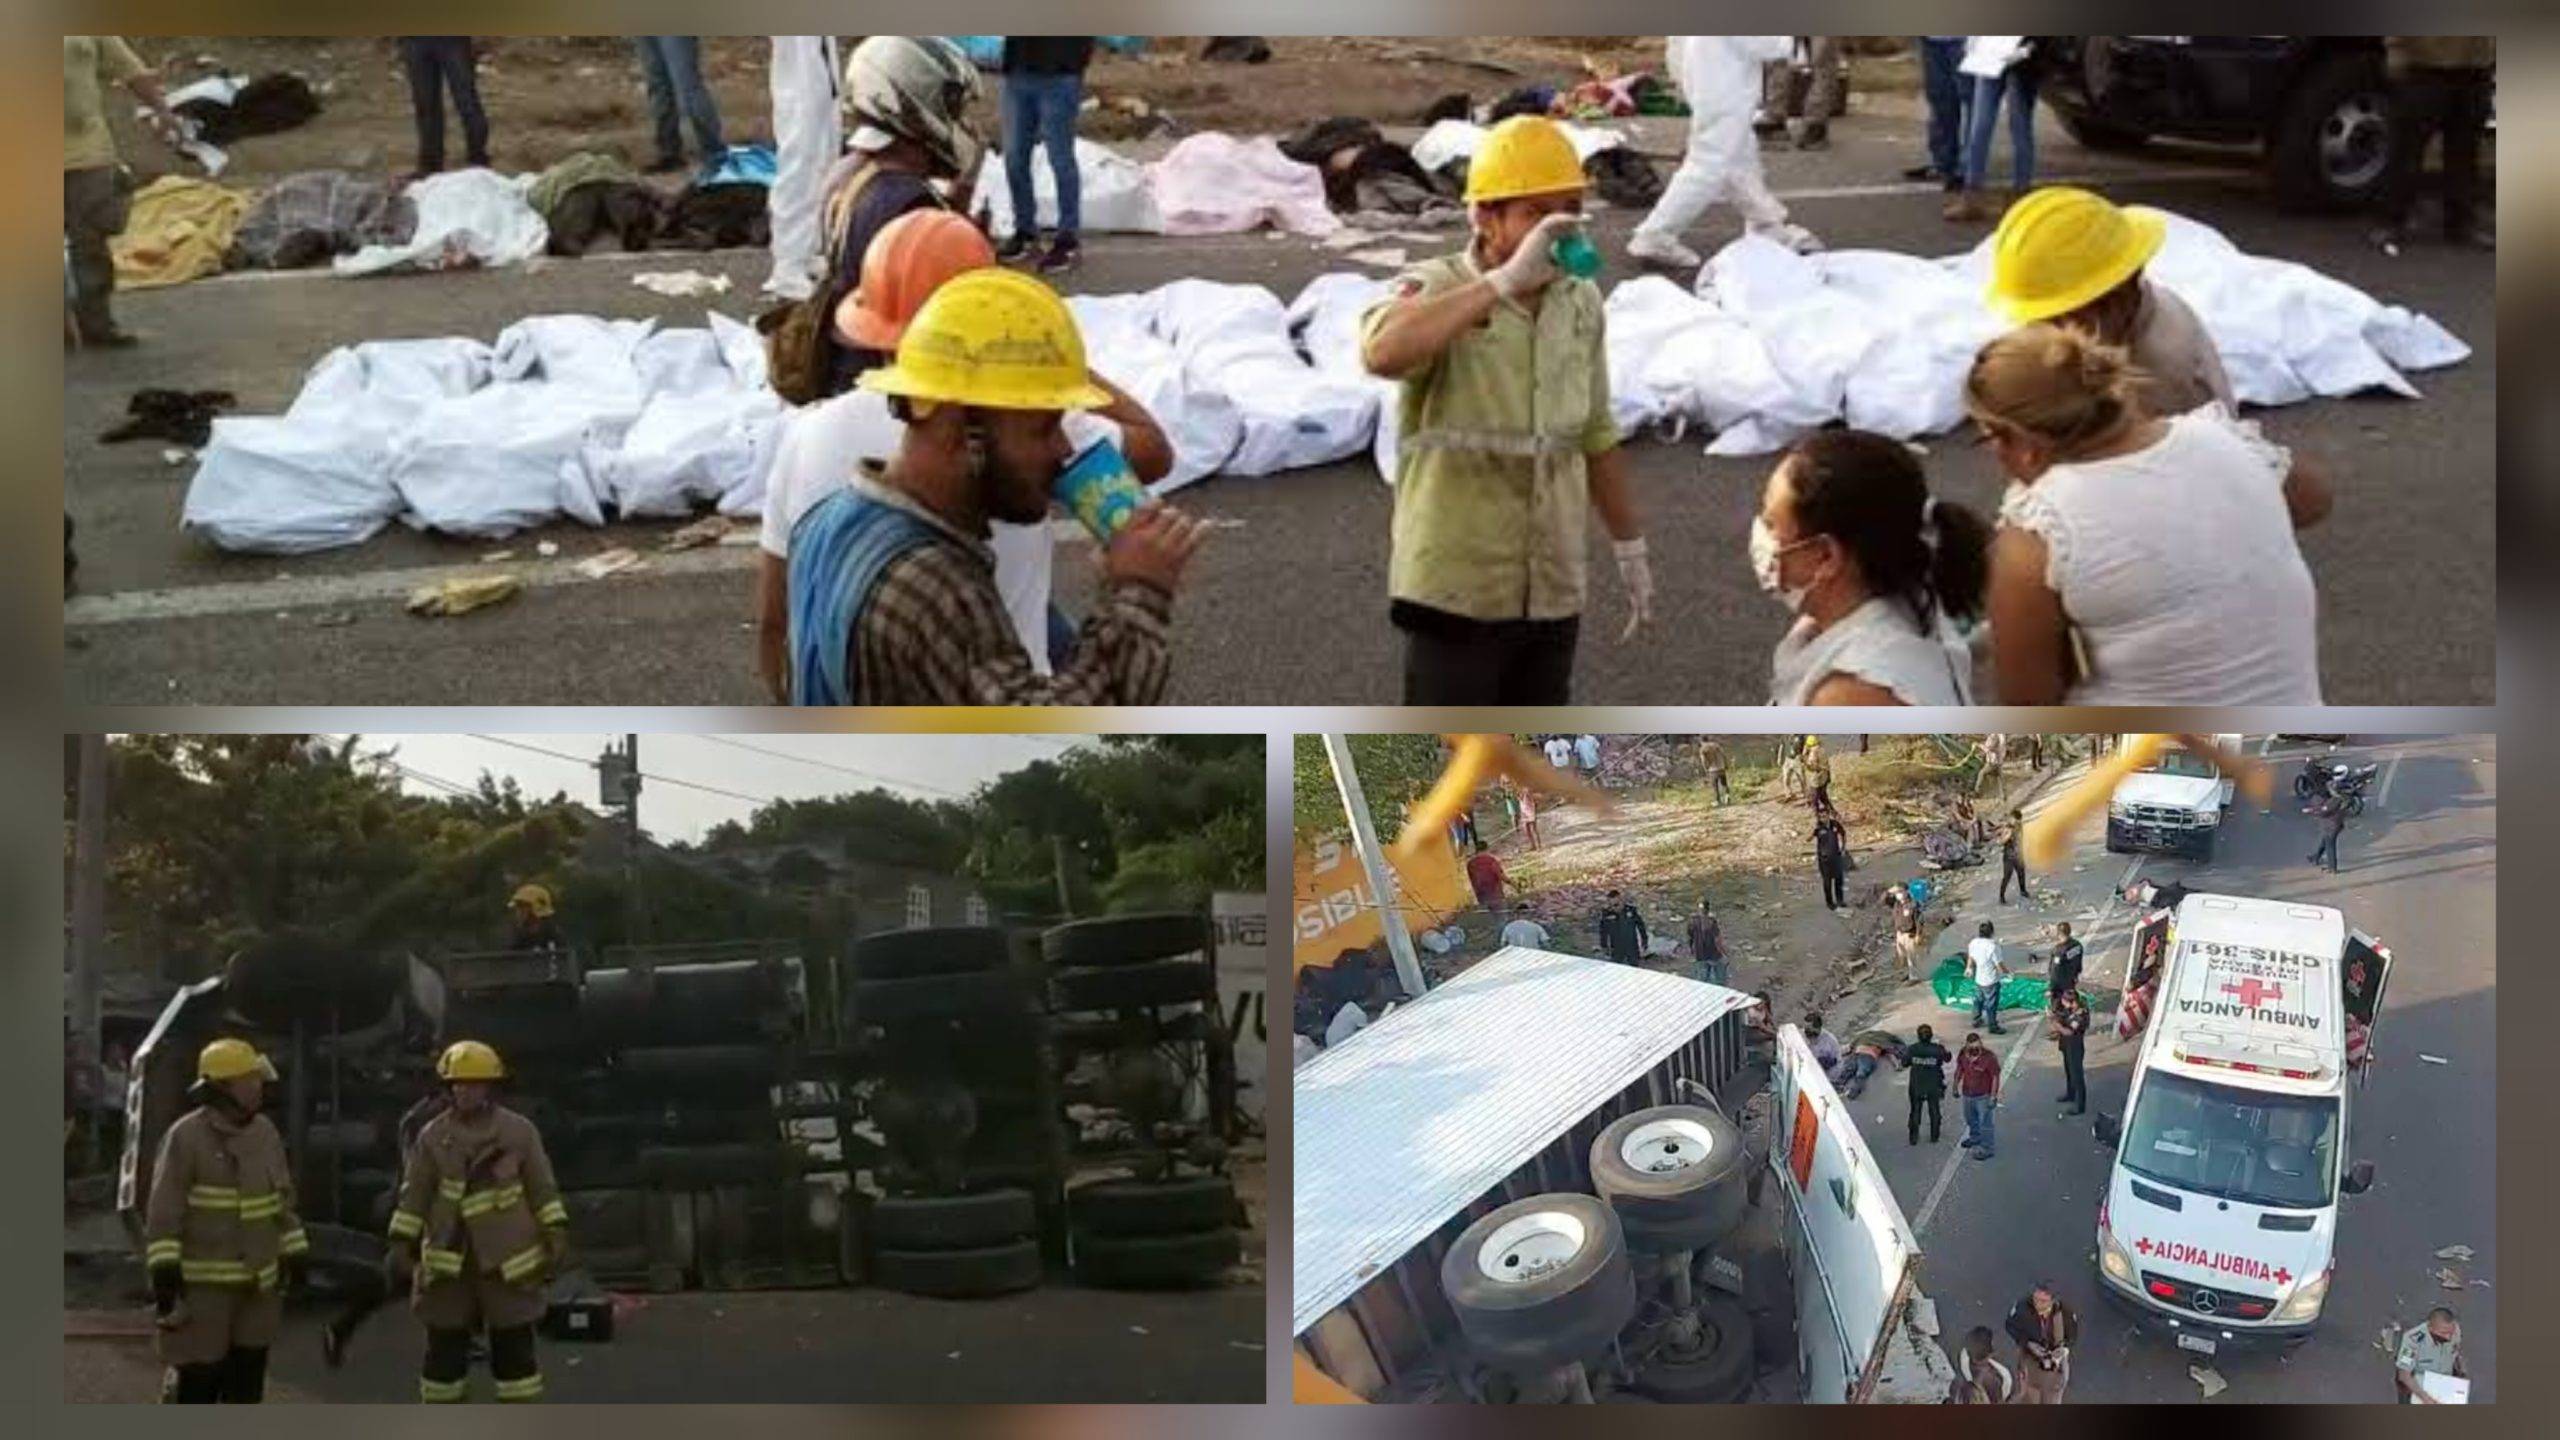 Vuelca tráiler que transportaba migrantes en carretera de Chiapas; reportan 49 muertos